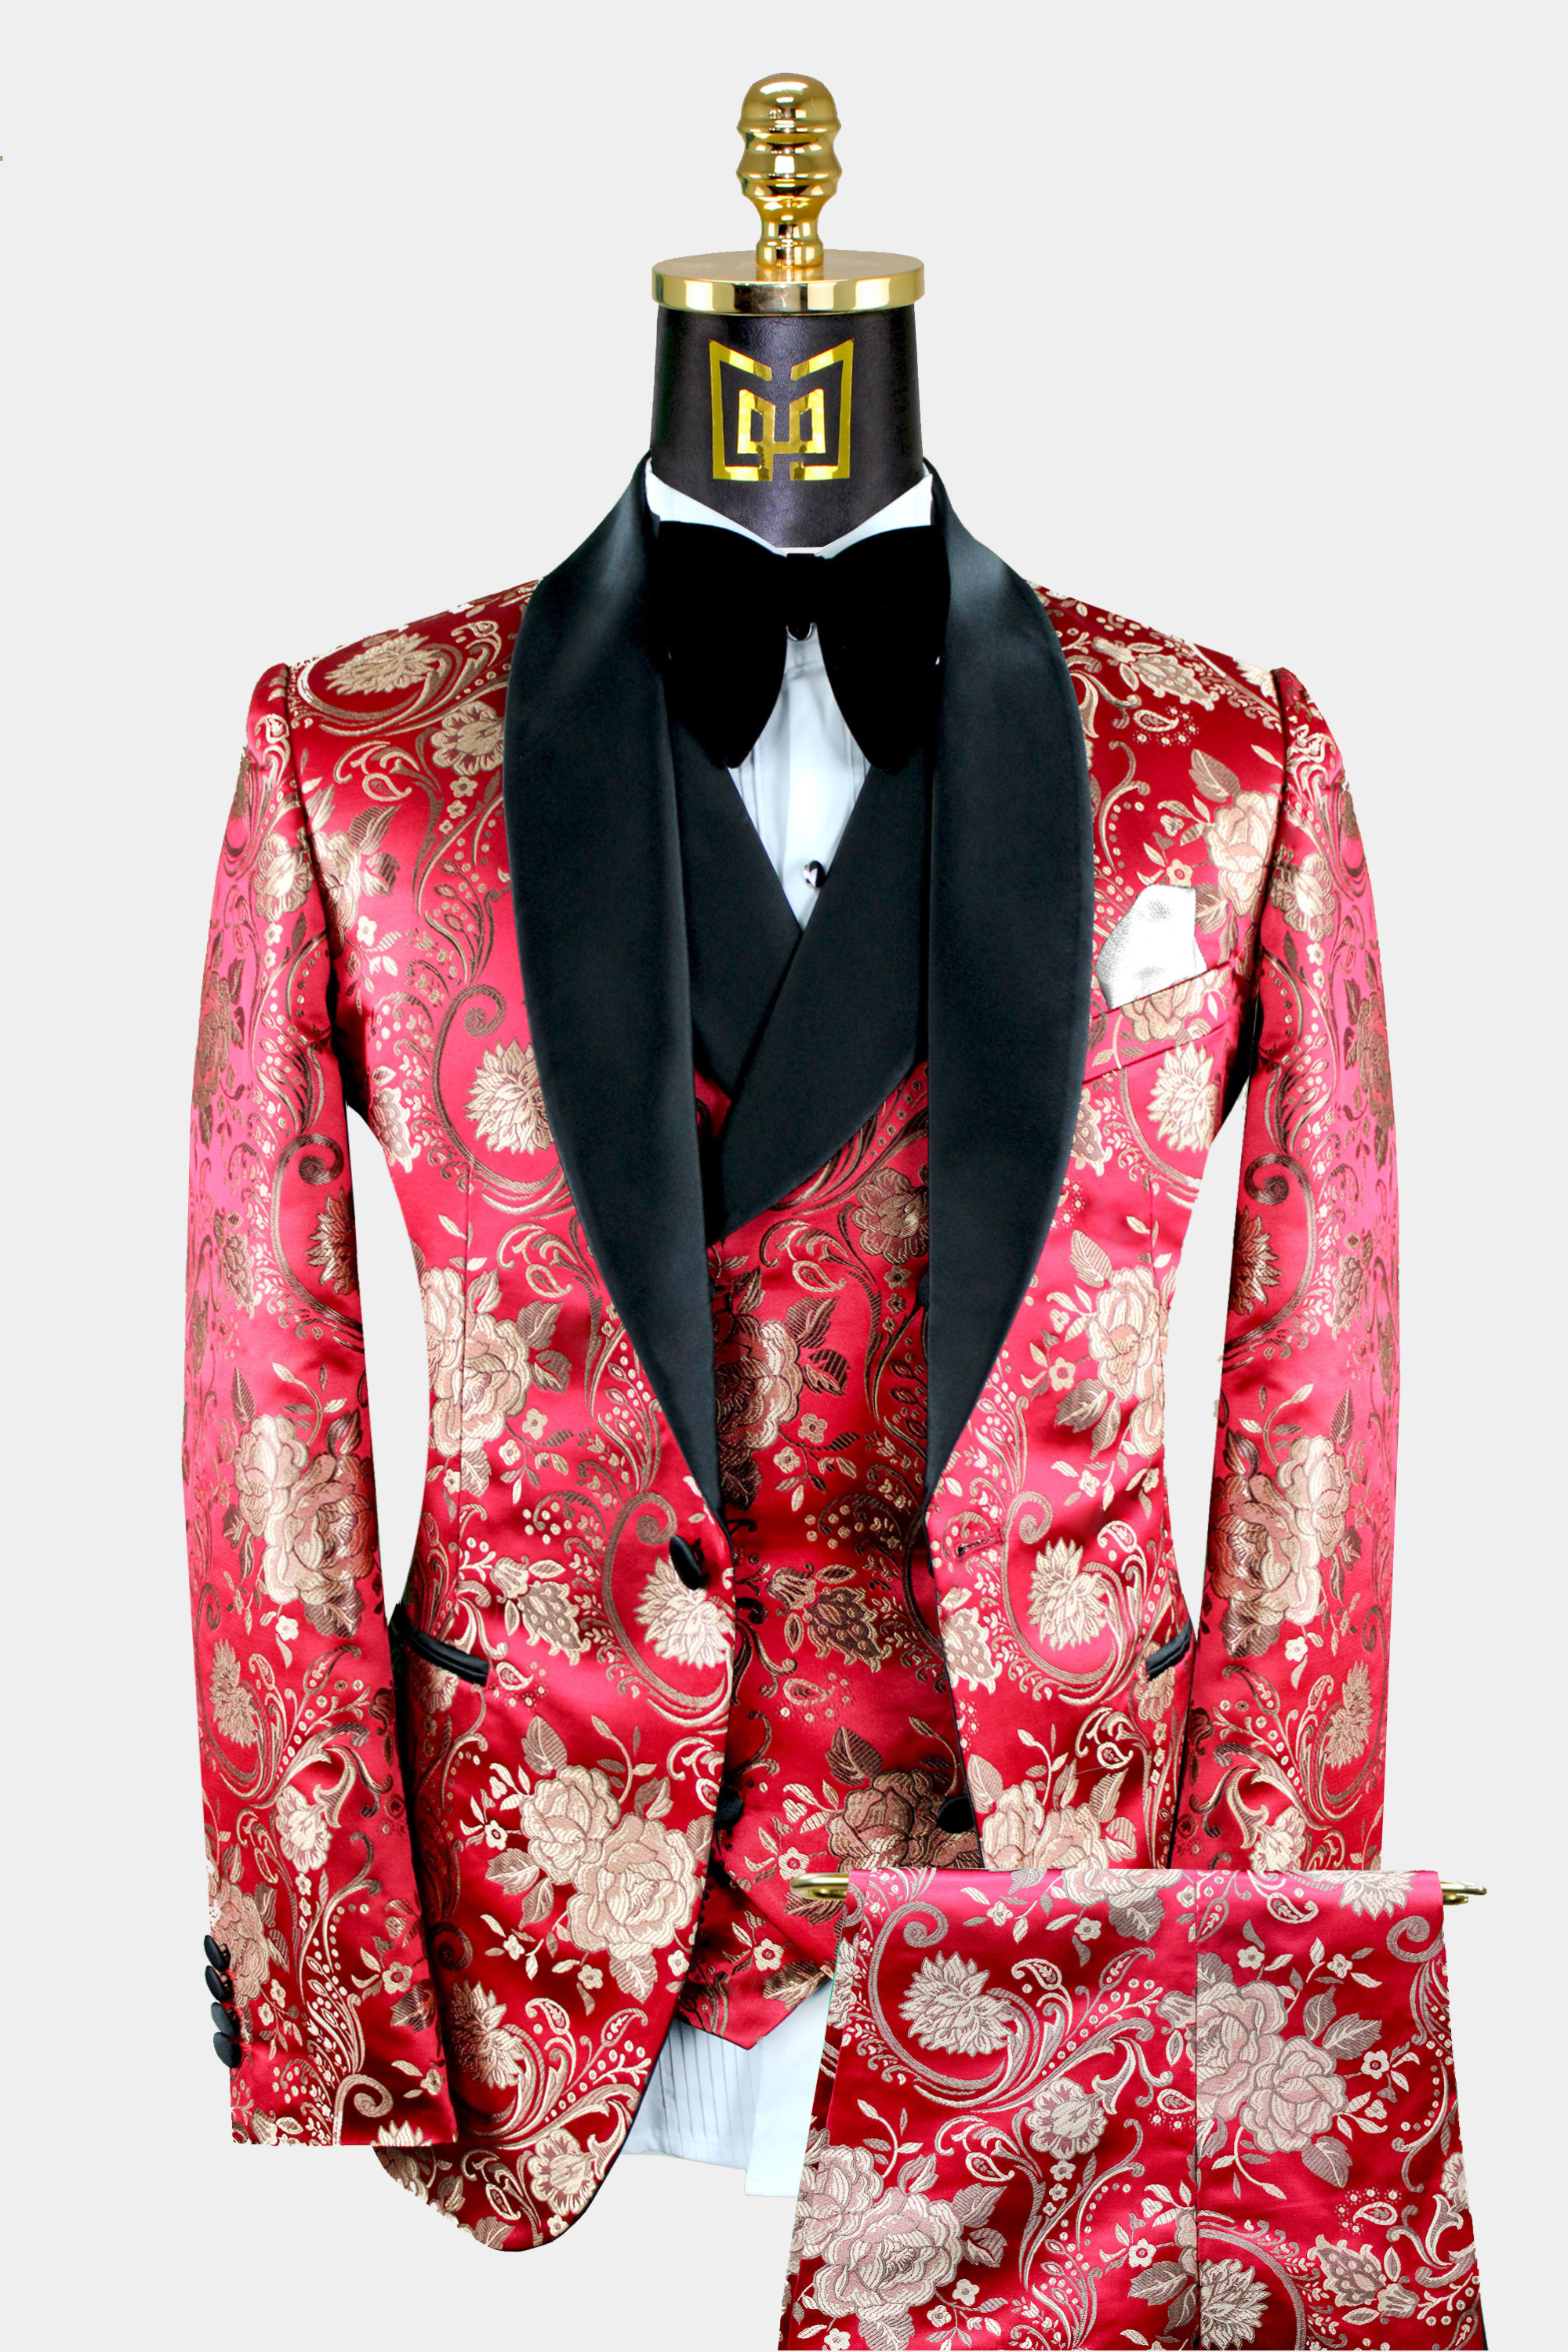 Mens-Red-and-Gold-Tuxedo-Wedding-Groom-Prom-Suit-from-Gentlemansguru.com_